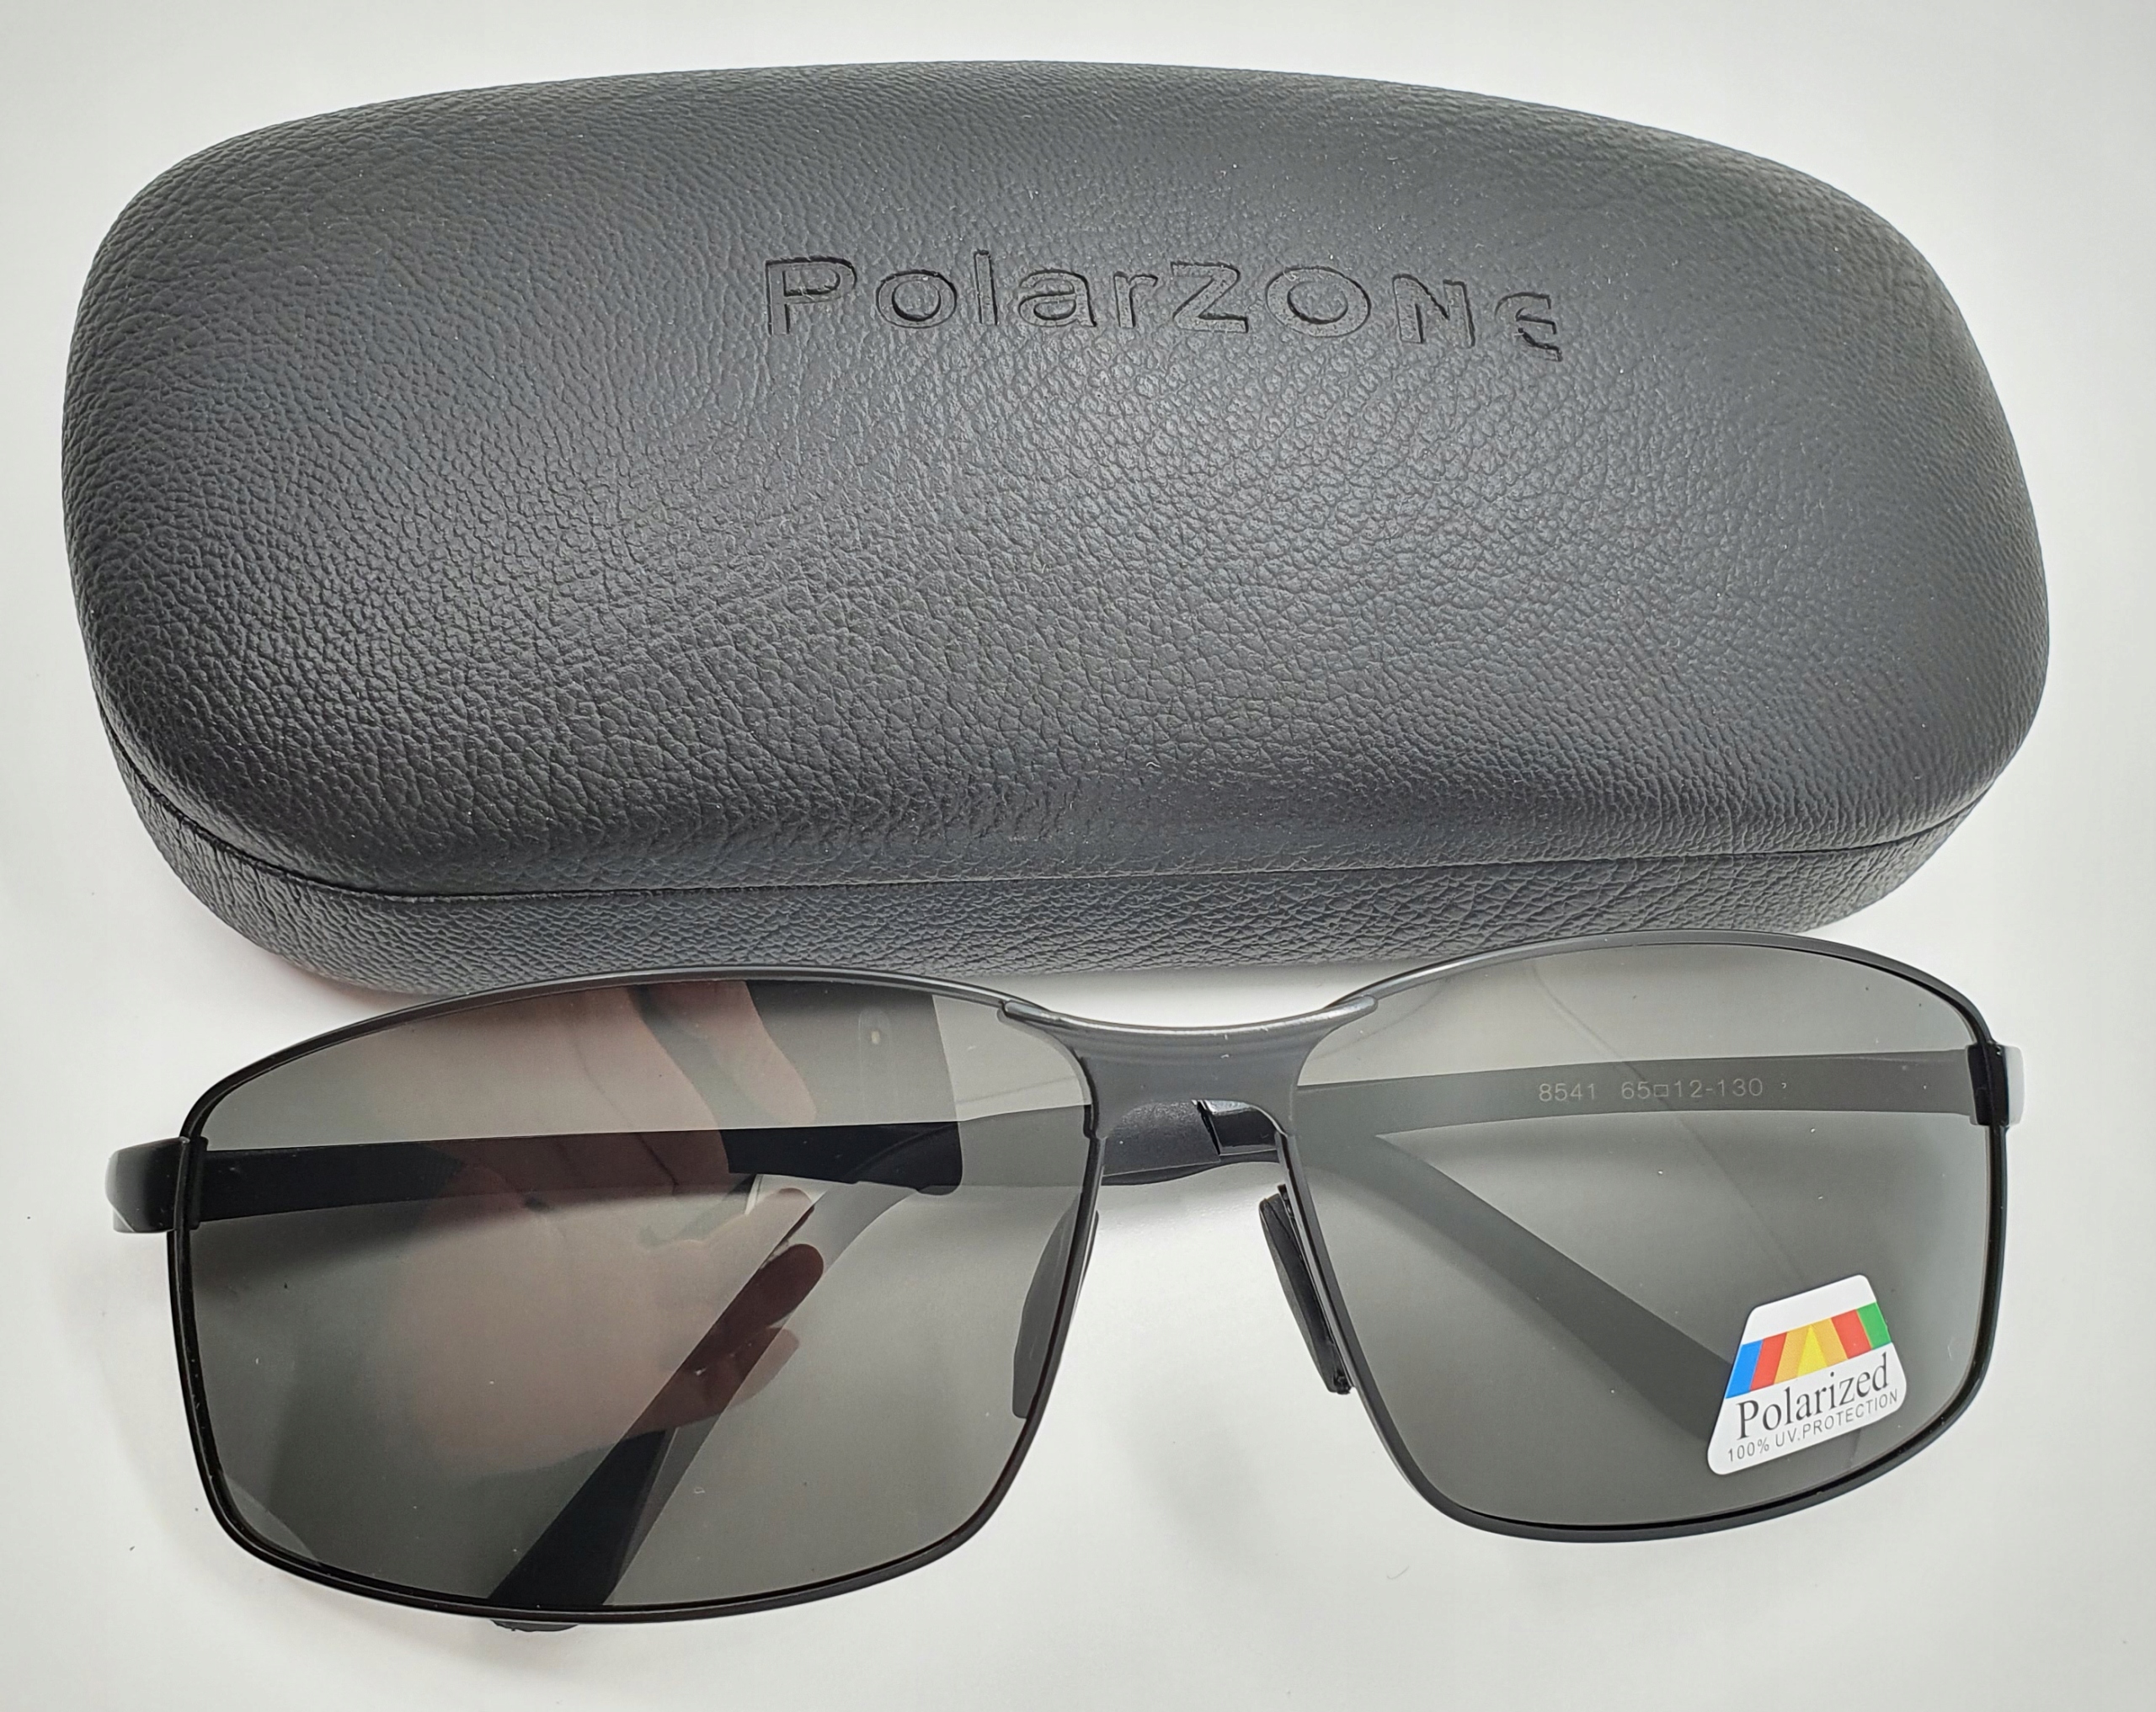 Алюминиевые мужские поляризованные солнцезащитные очки премиум УФ особенности дополнительный чехол включен поляризация